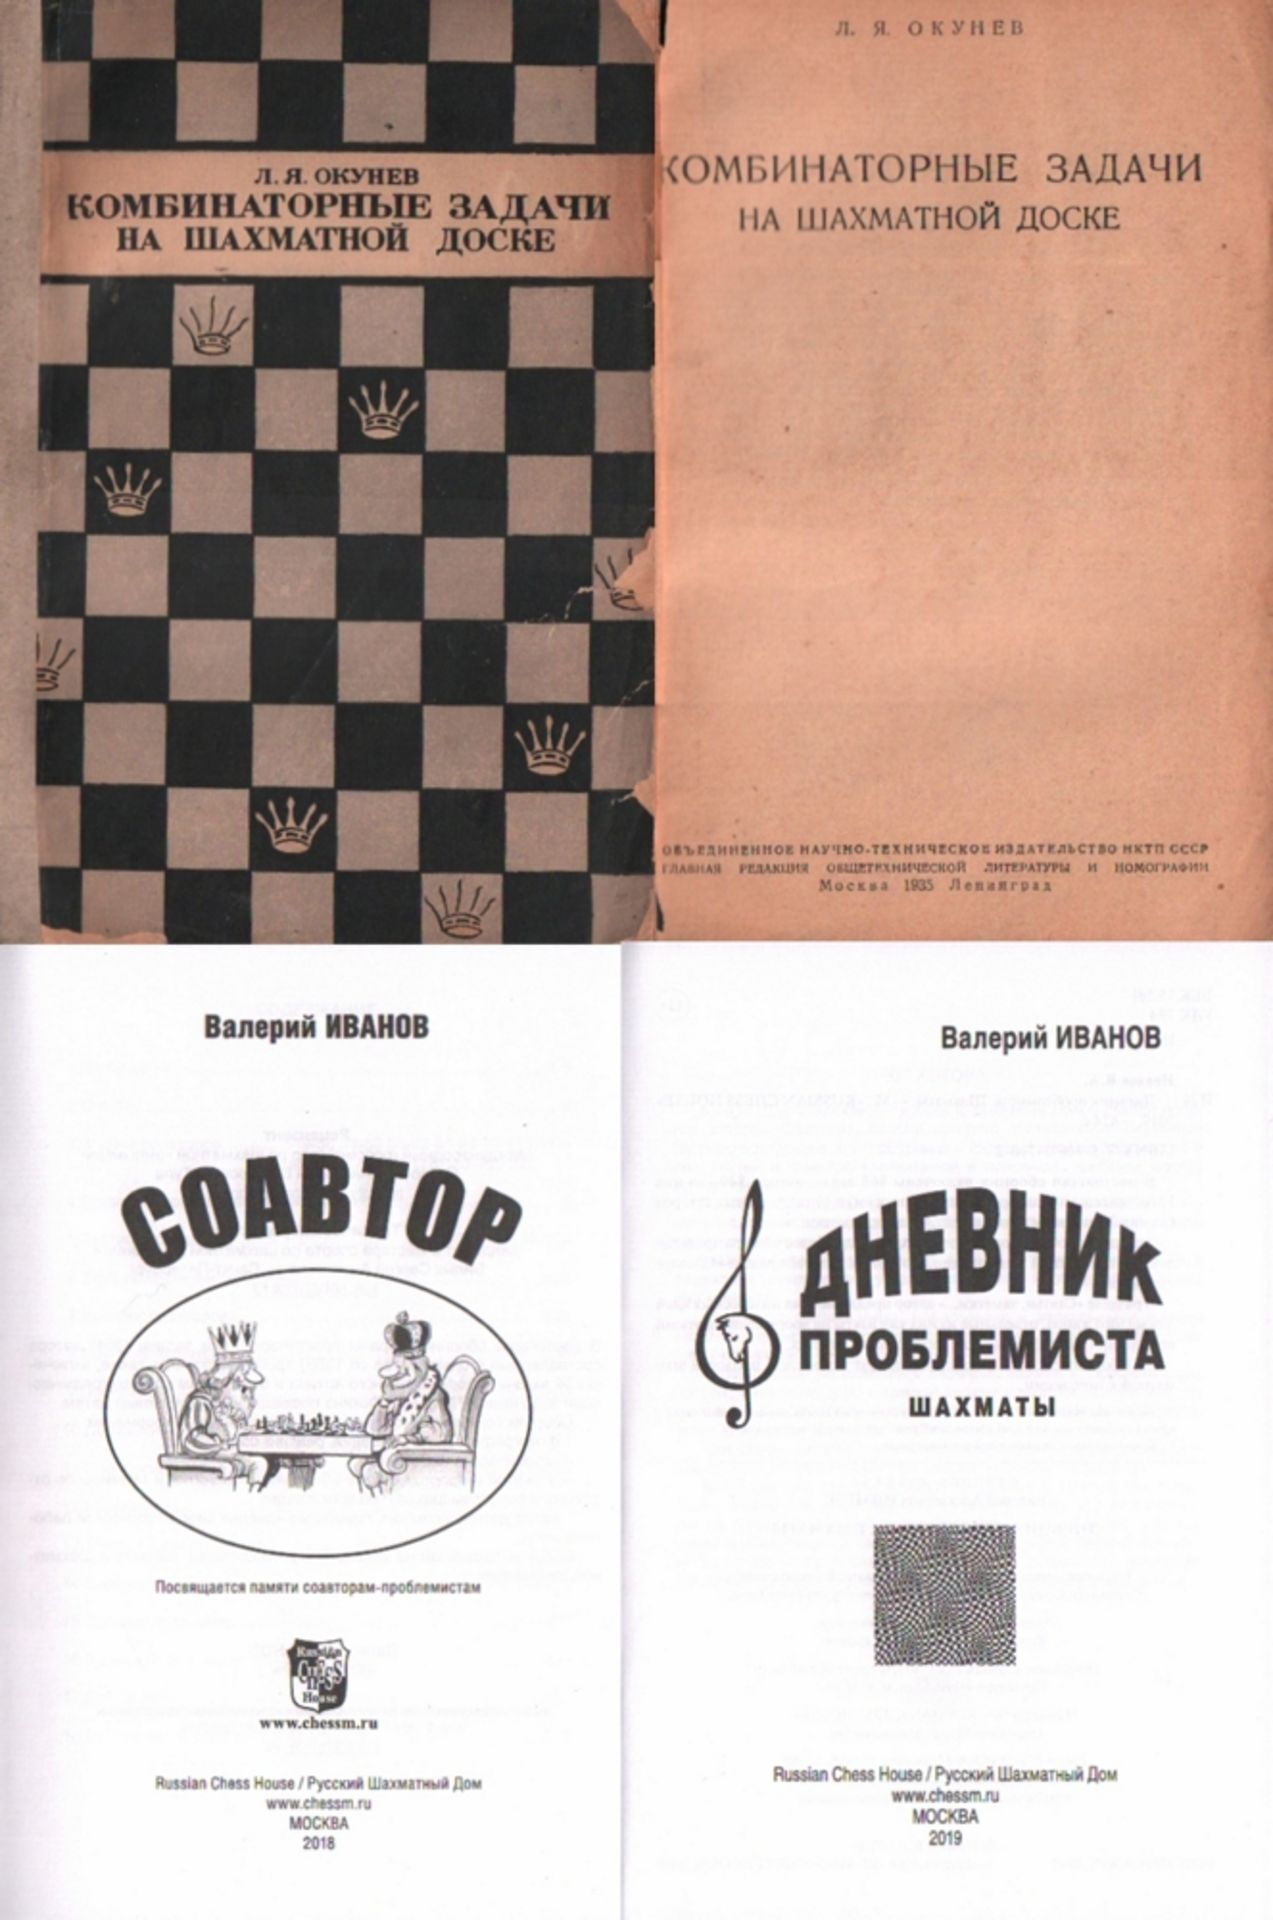 Okunew, L. J. Kombinatornyje sadatschi na schachmatnoj doske. Moskau und Leningrad, Obedinennoje Nau